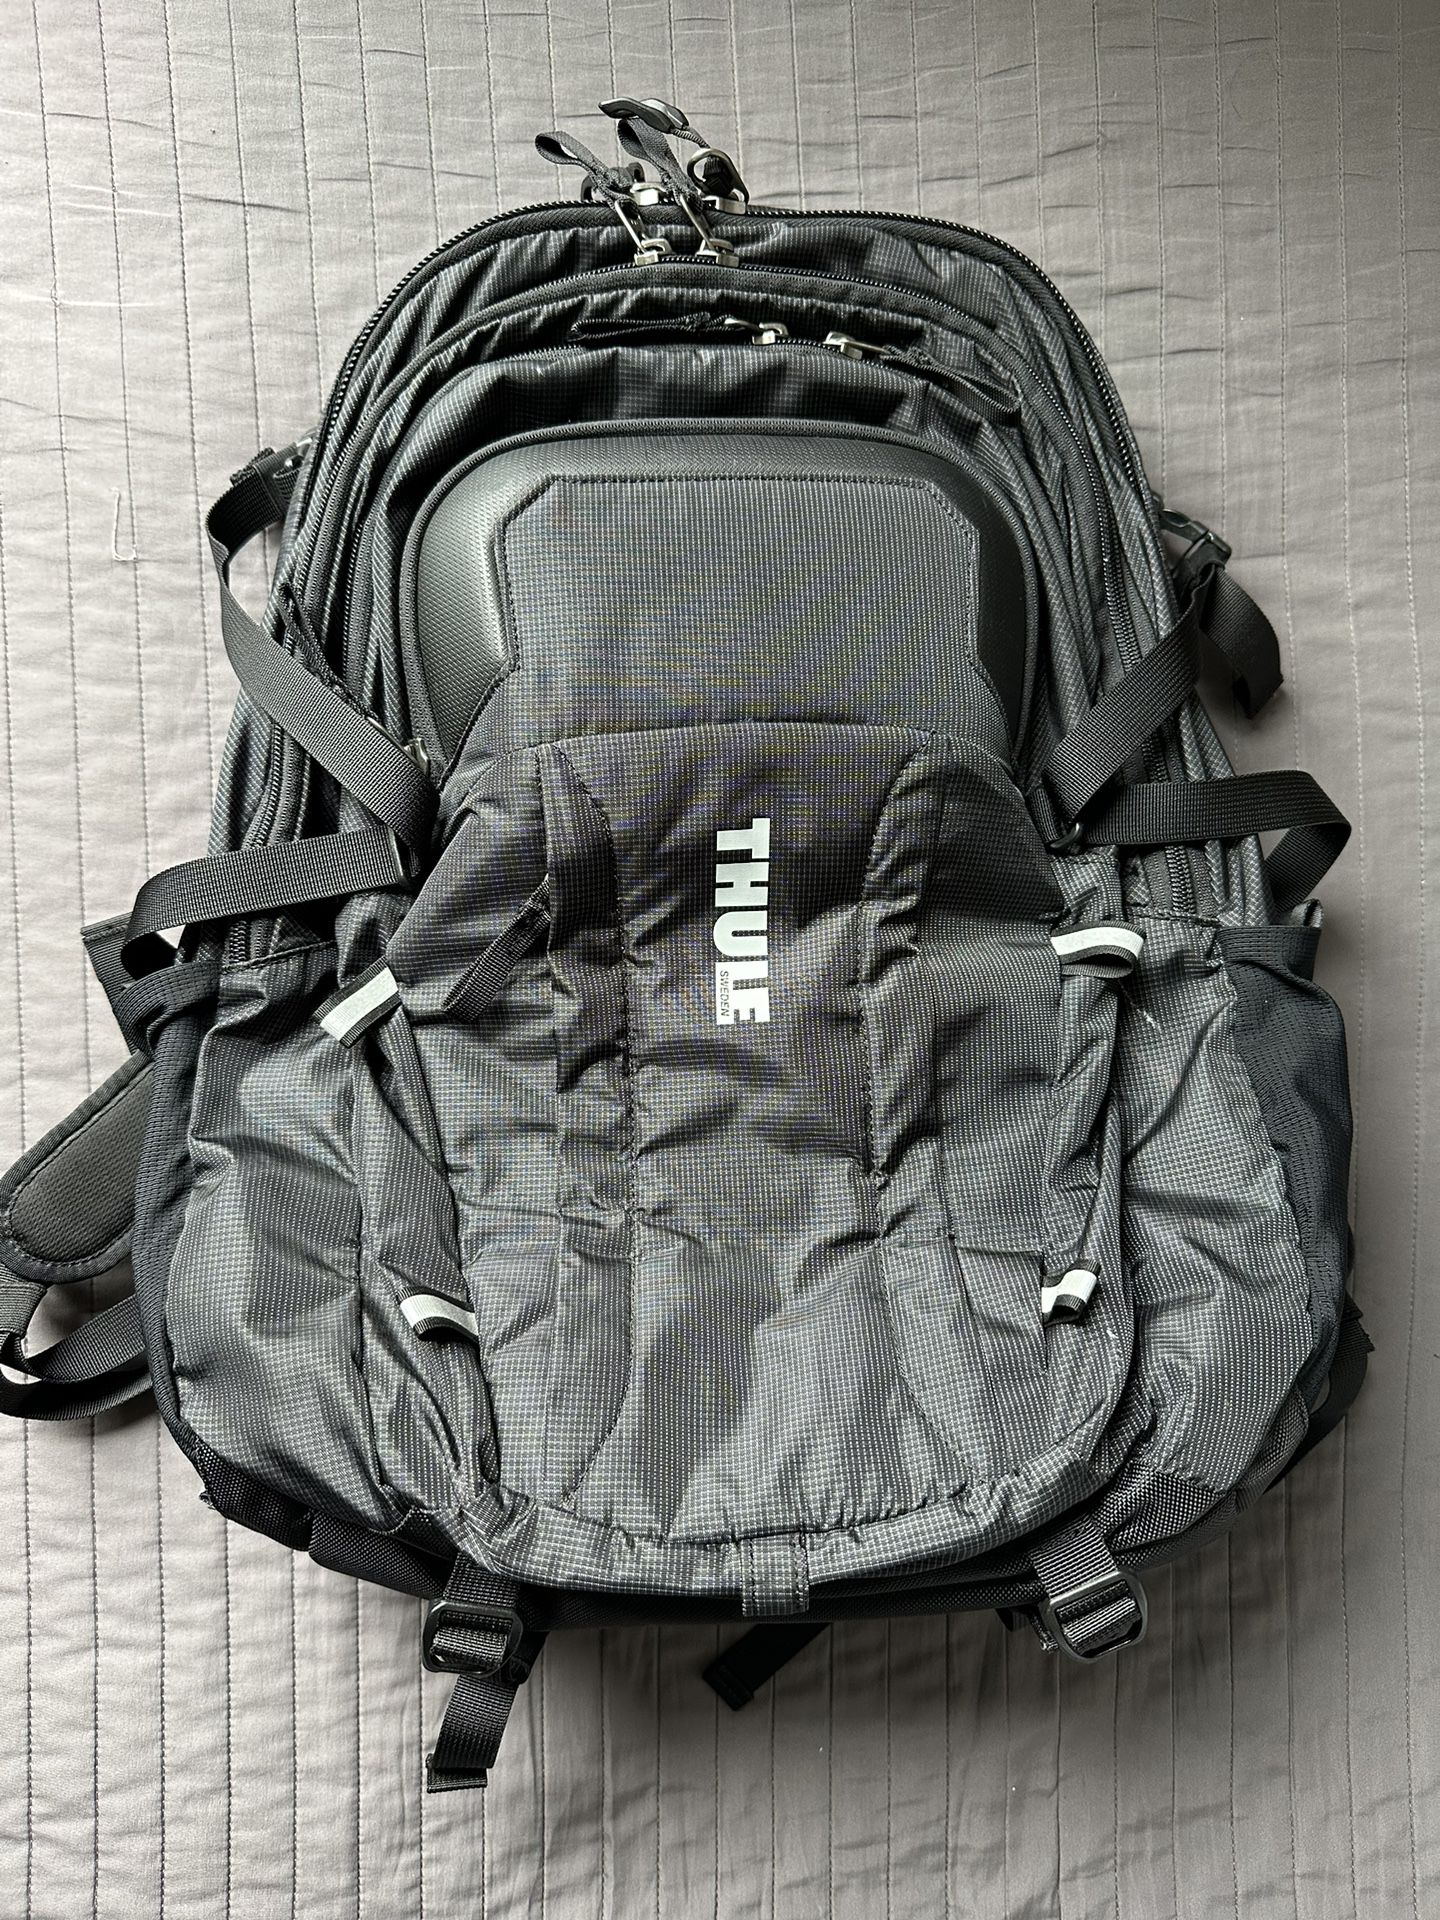 Thule backpack 